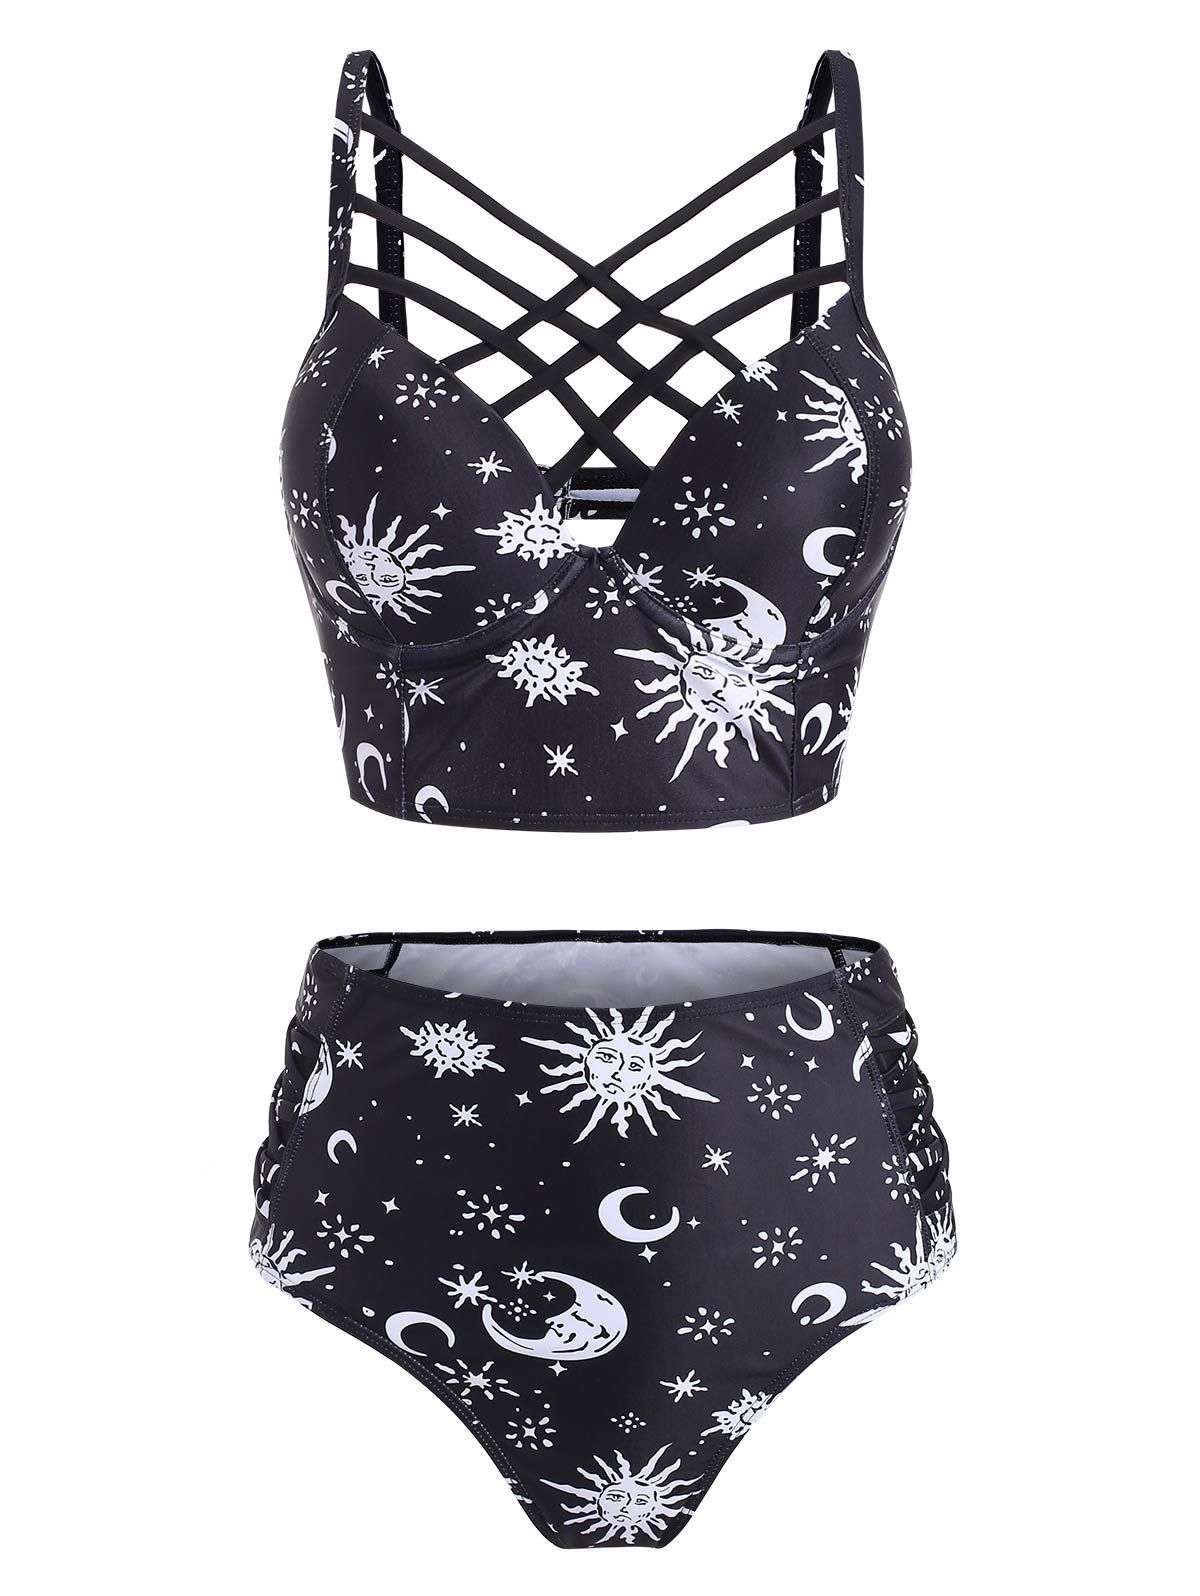 Vintage Tankini Swimsuit Corset Moon Sun Bathing Suit Star Print Lattice Summer Beach Swimwear - BLACK S